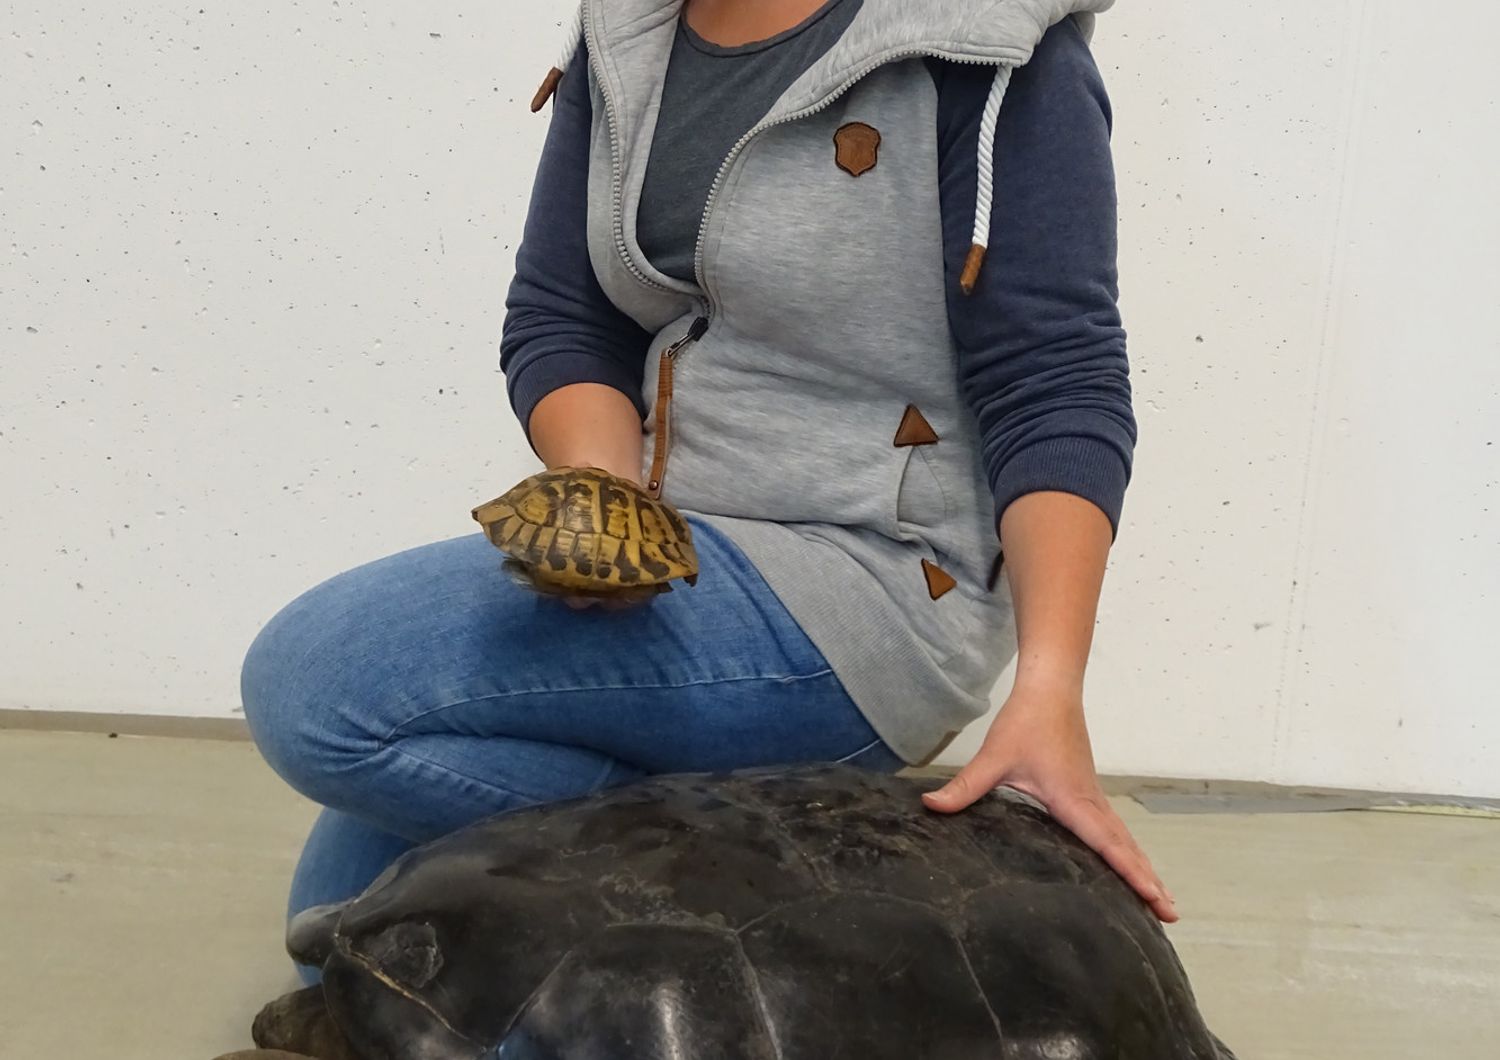 Scoperta Sicilia tartaruga fossile Europa